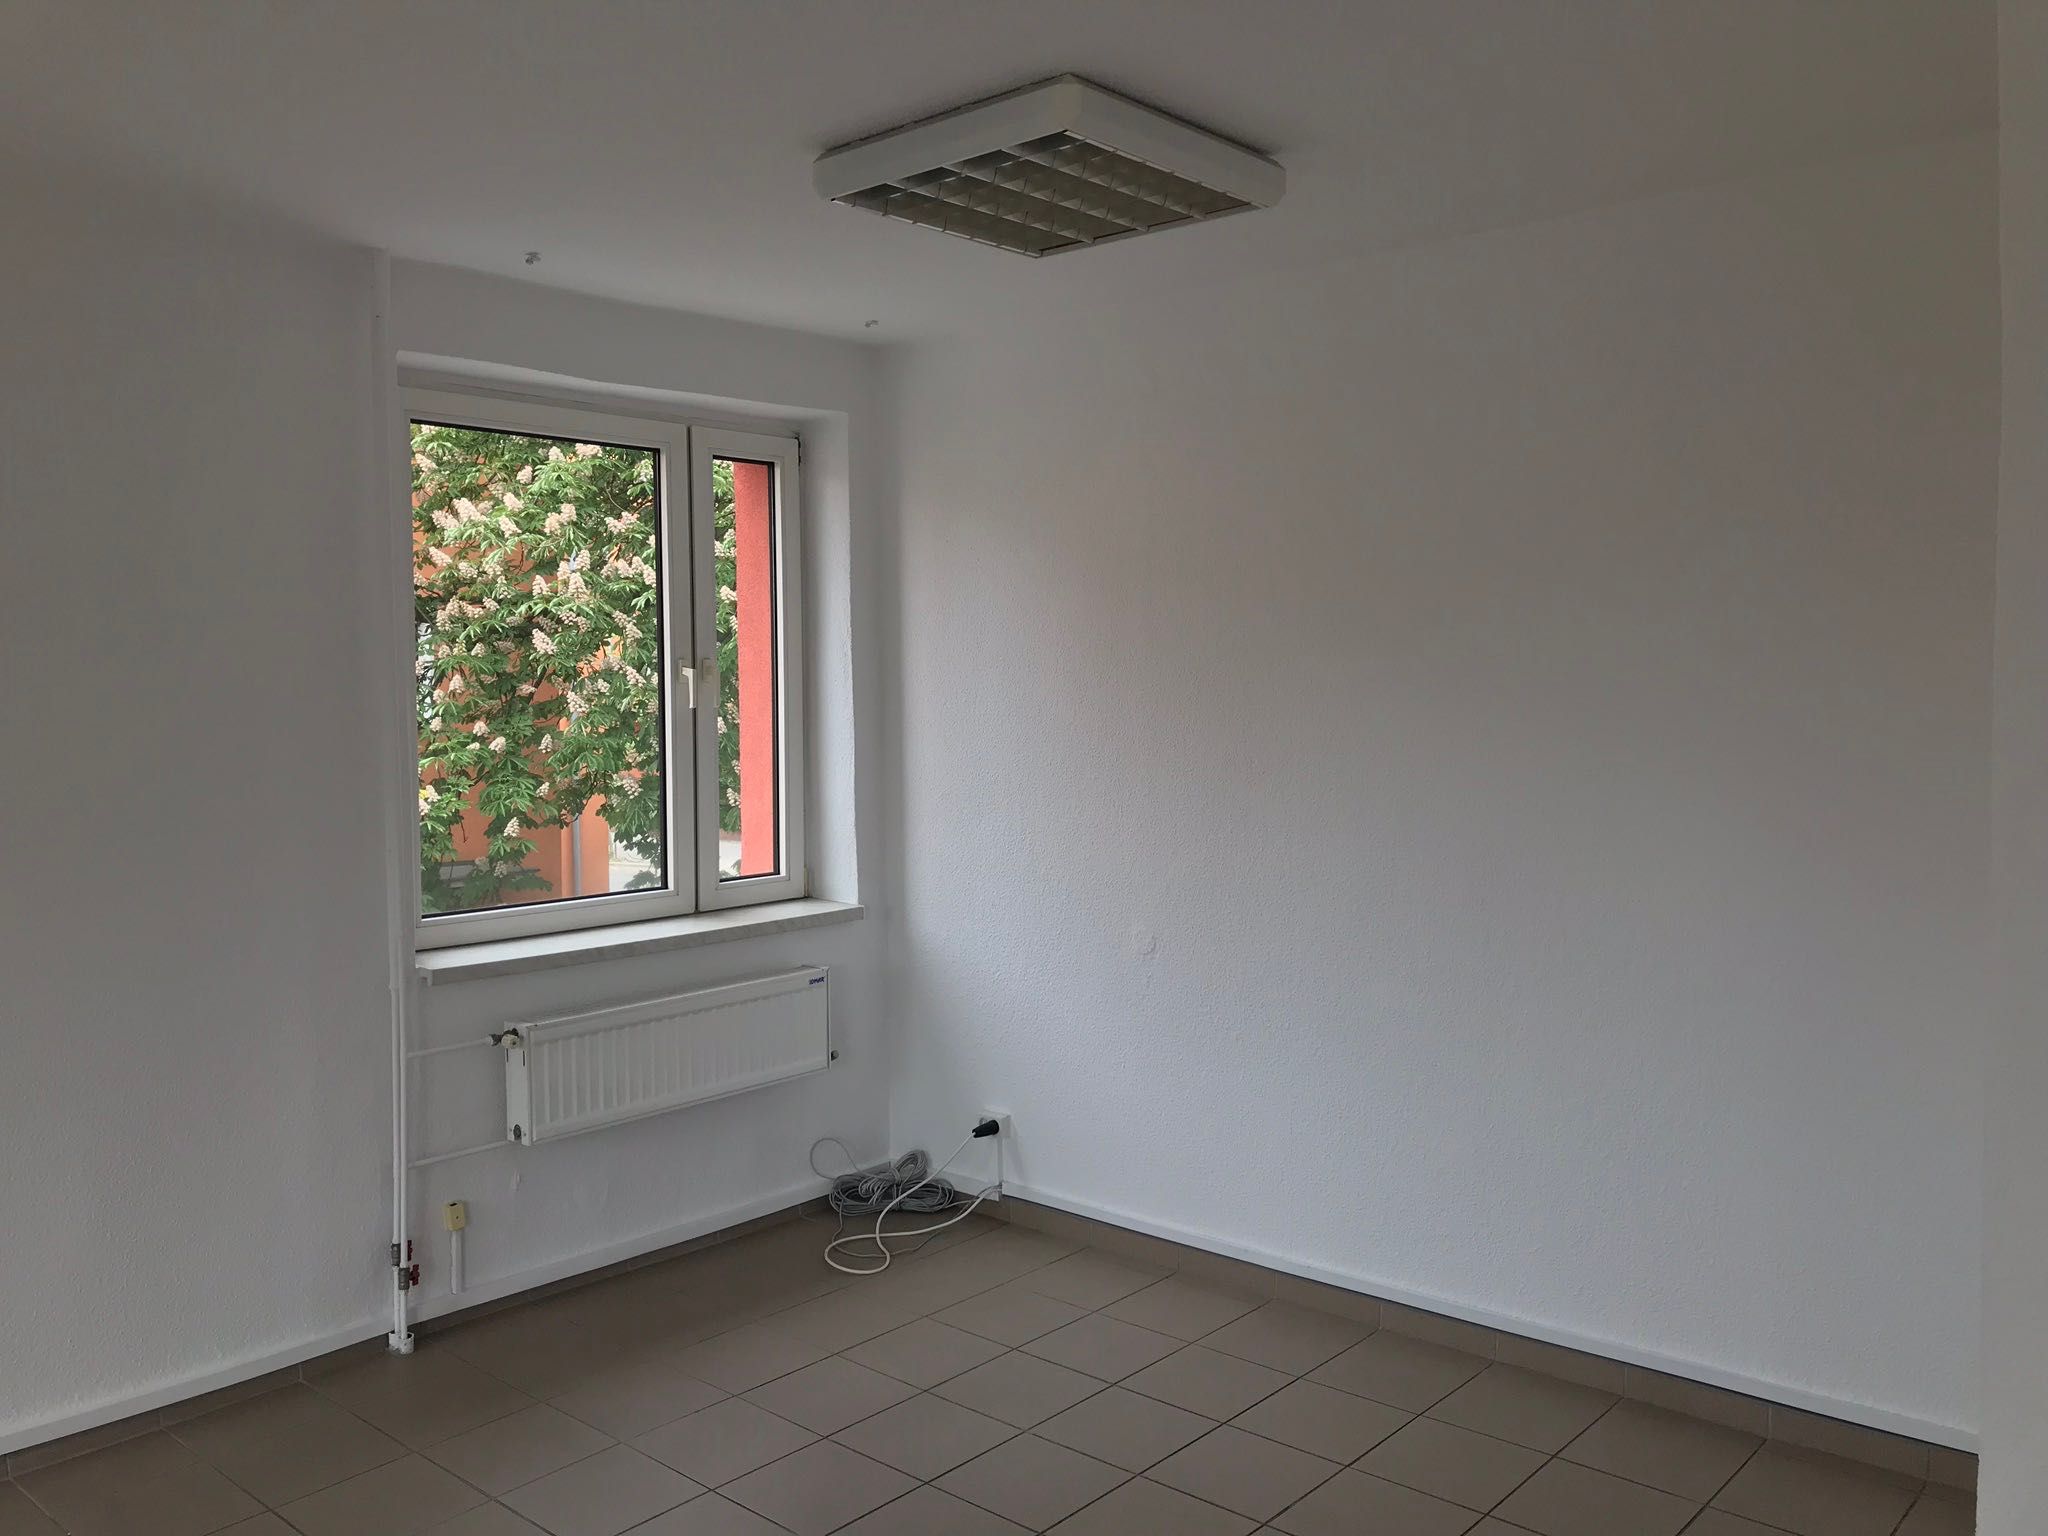 Lokal 31 m2, klimatyzowane biuro Opole, Biurowiec FAMILIA zaprasza!